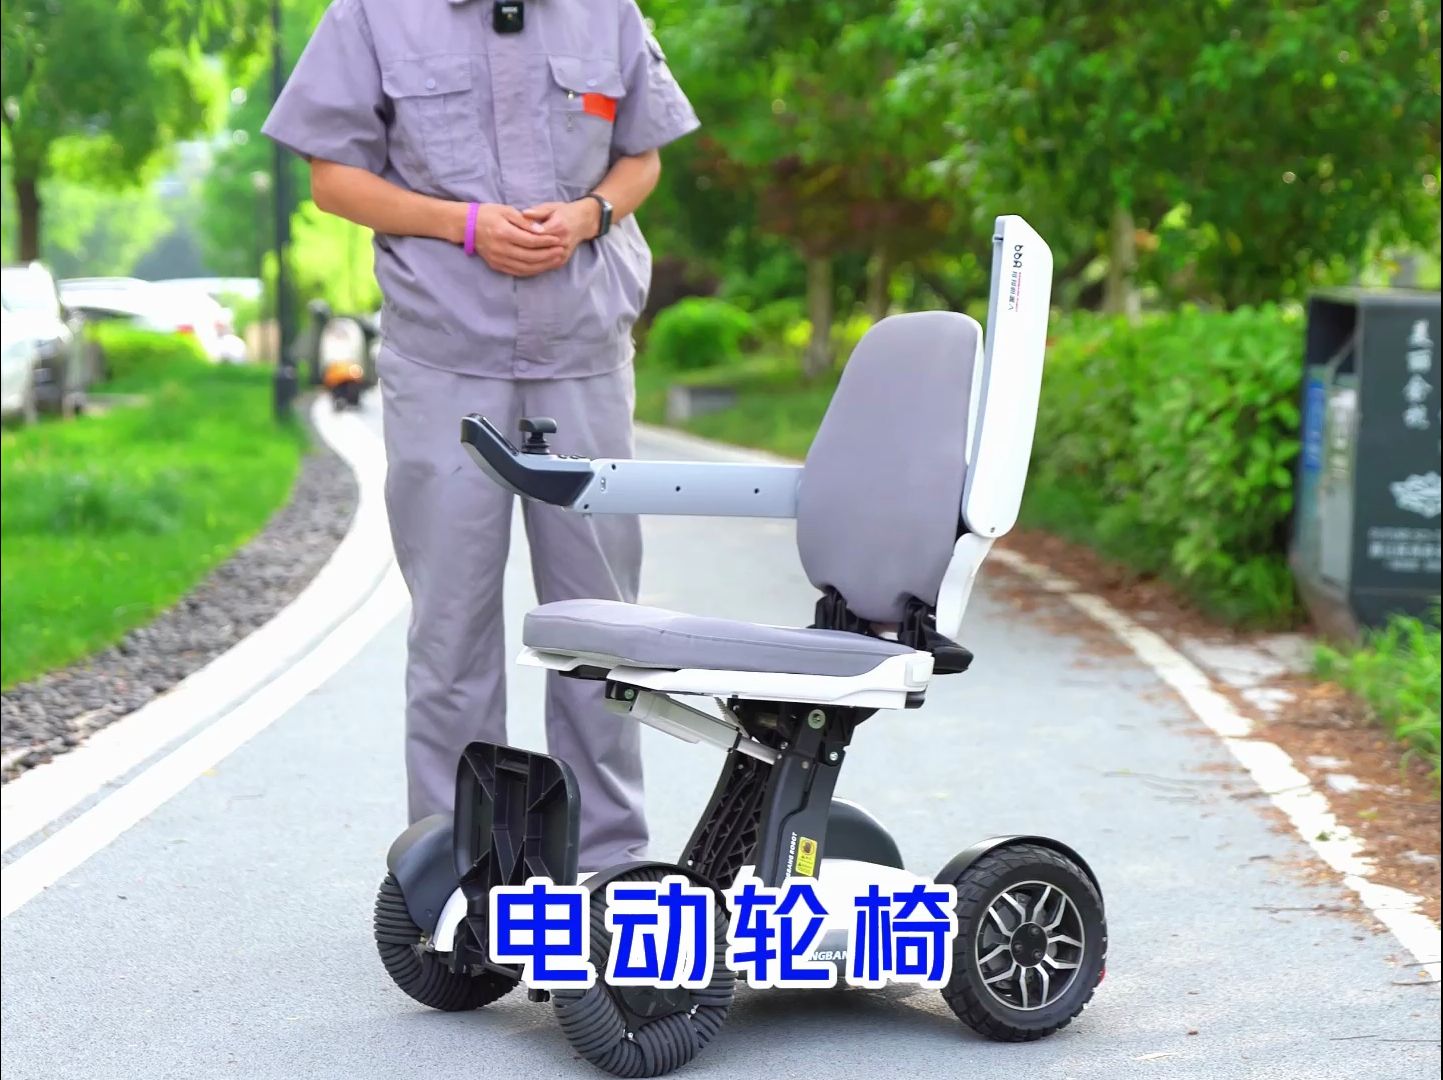 父亲老了腿脚不便,买这个电动轮椅操作简单